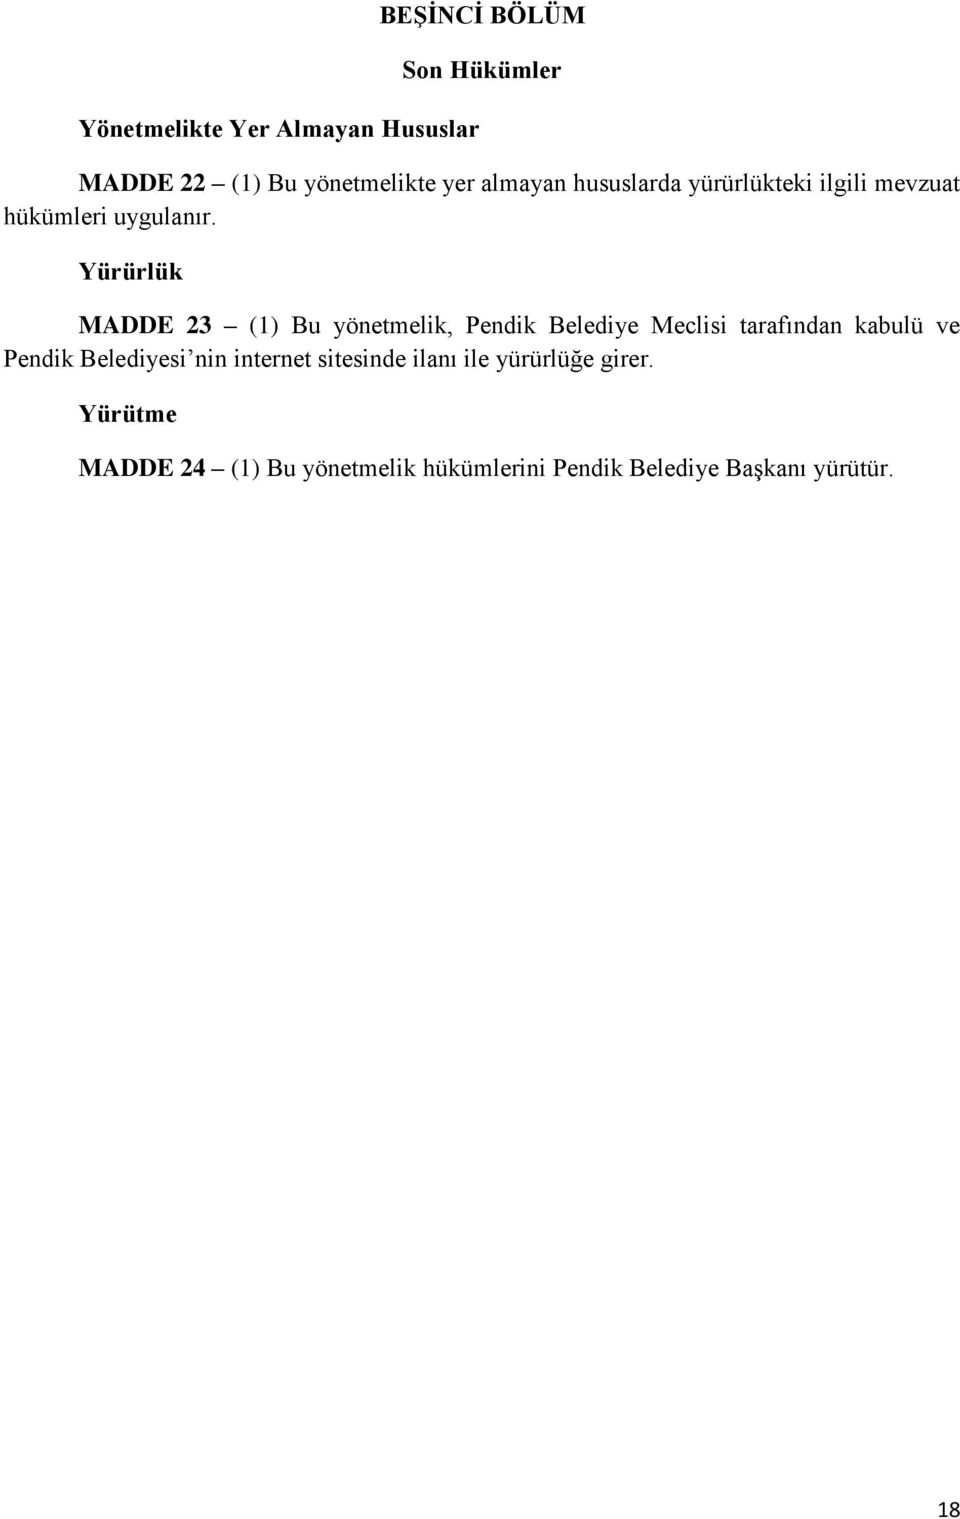 Yürürlük MADDE 23 (1) Bu yönetmelik, Pendik Belediye Meclisi tarafından kabulü ve Pendik